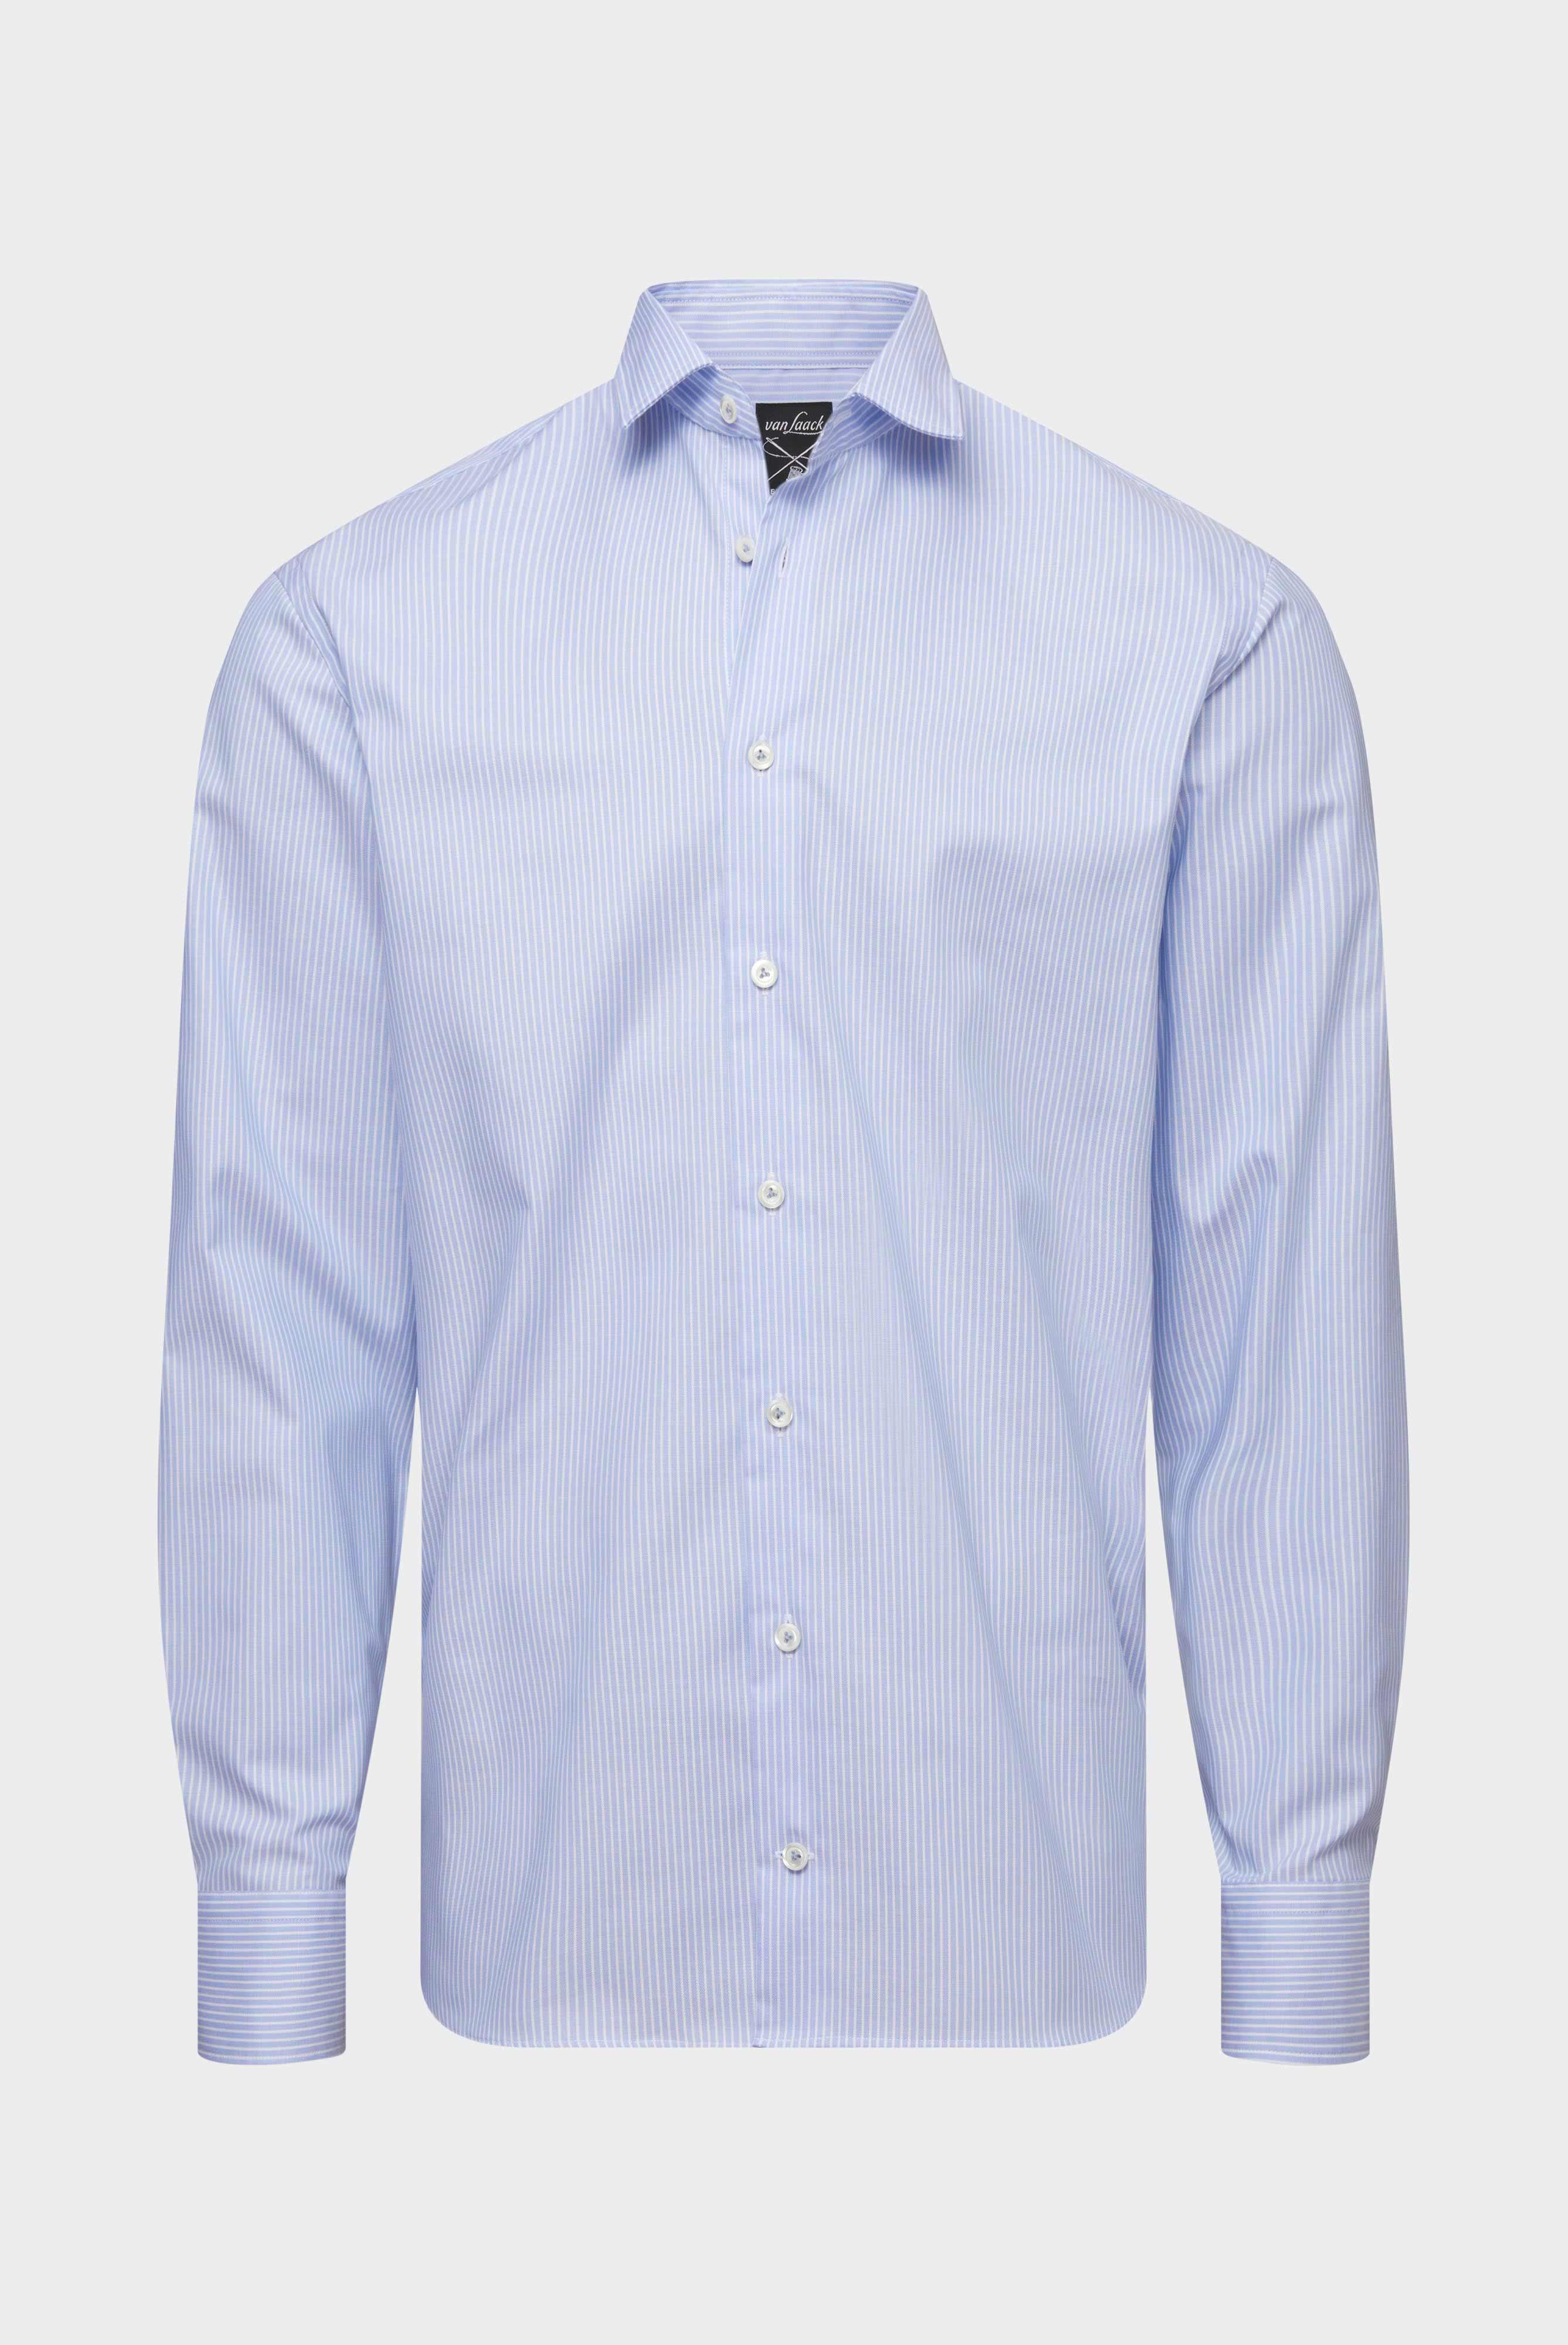 Bügelleichte Hemden+Bügelfreies Hemd aus Bio-Baumwolle Tailor Fit+20.3281.NV.166007.730.39